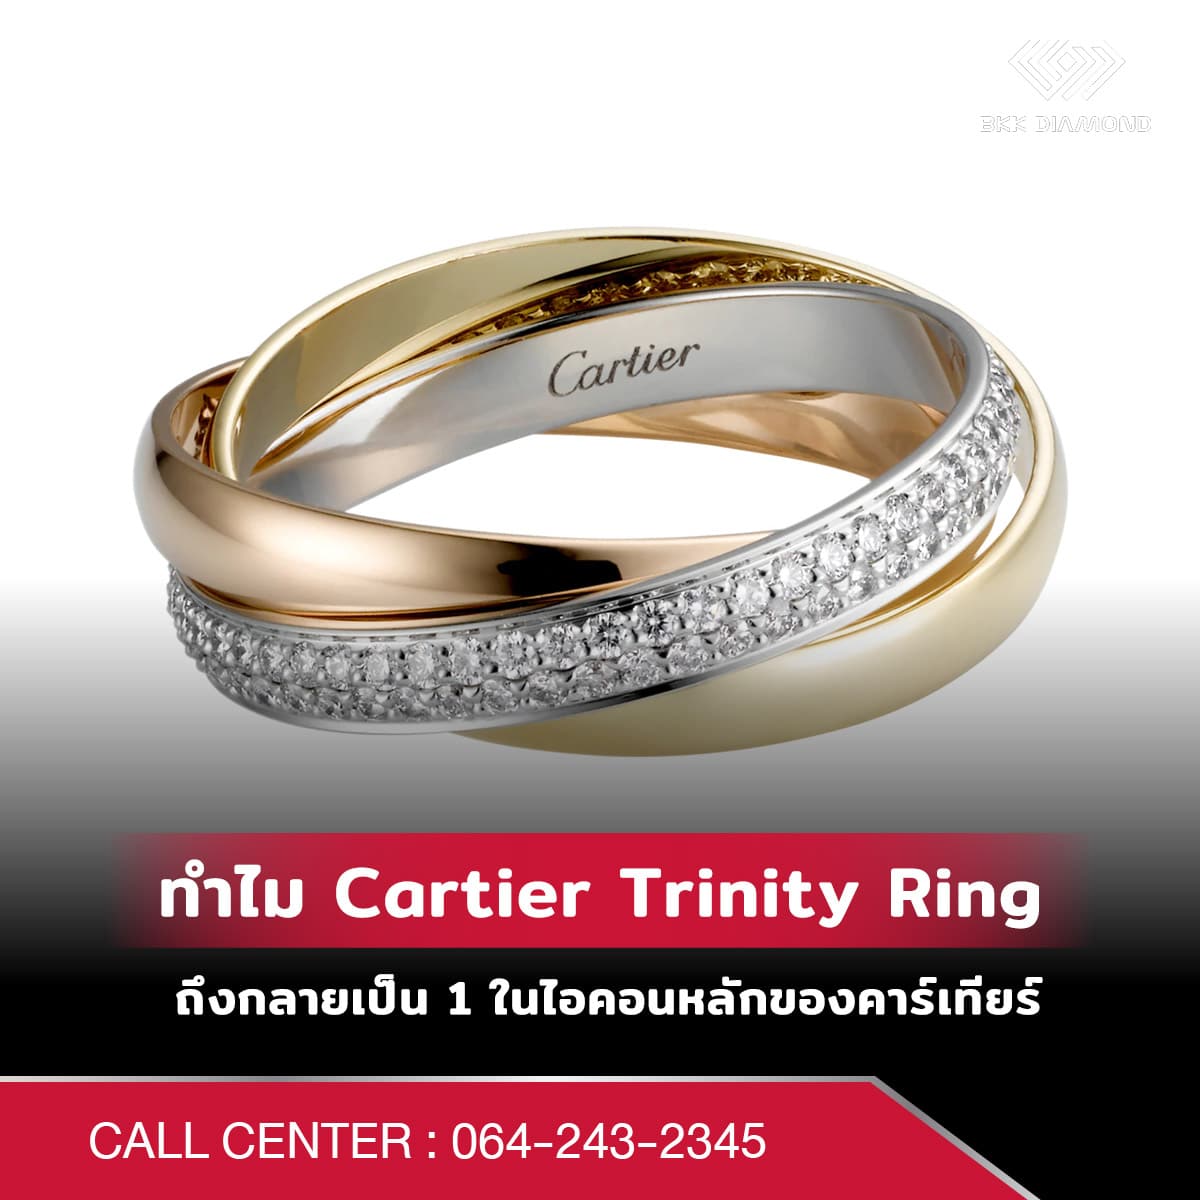 ทำไม Cartier Trinity Ring ถึงกลายเป็น 1 ในไอคอนหลักของคาร์เทียร์